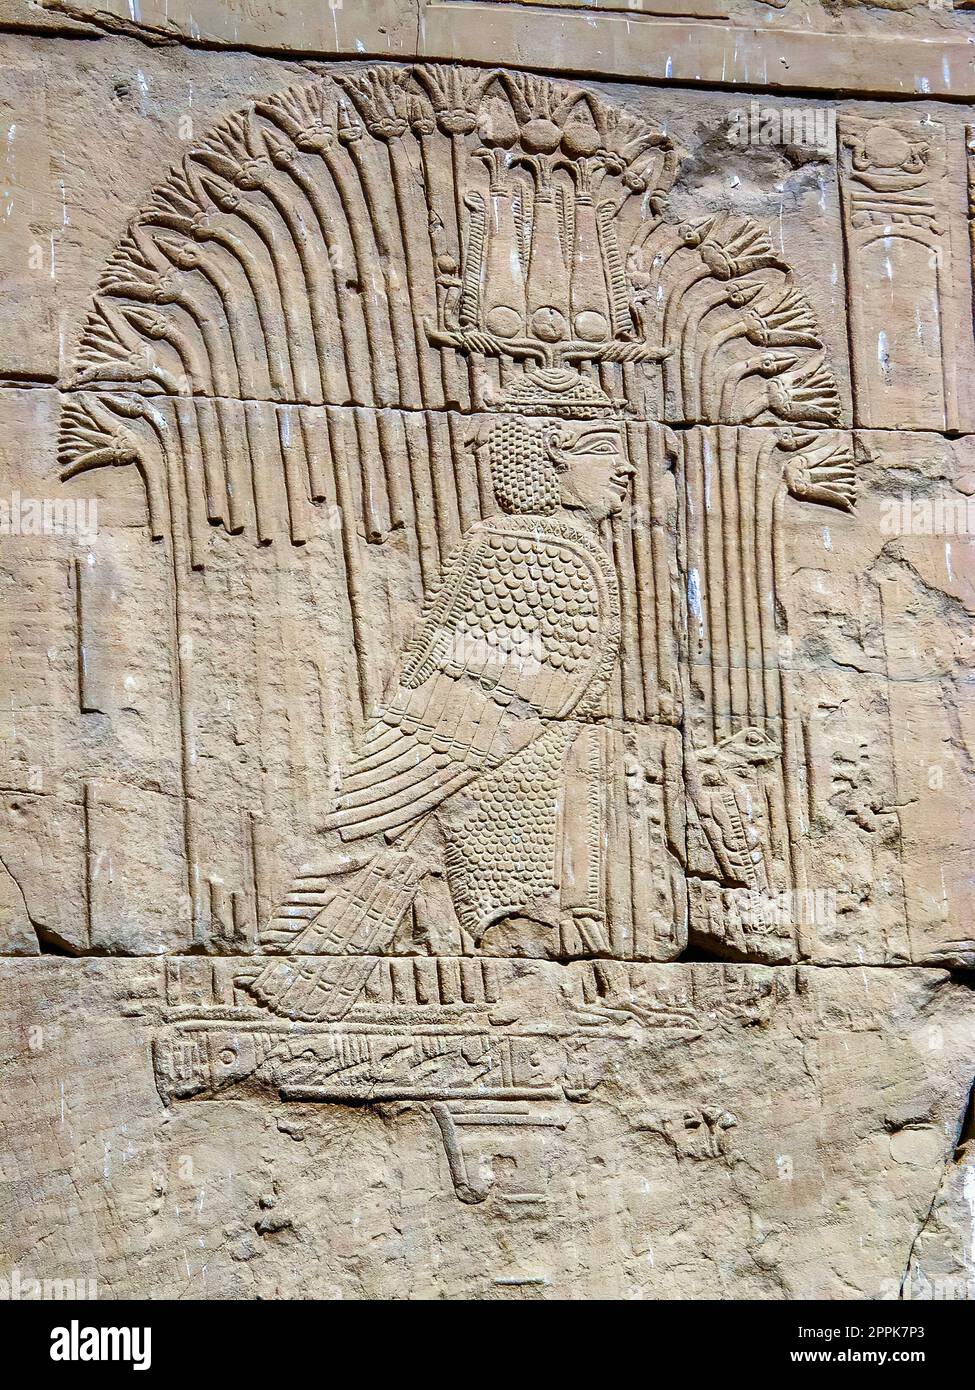 Corps d'oiseau à tête humaine représentant un dieu mythologique égyptien antique sculpté sur le mur du temple de Kom Ombo près d'Assouan. Banque D'Images